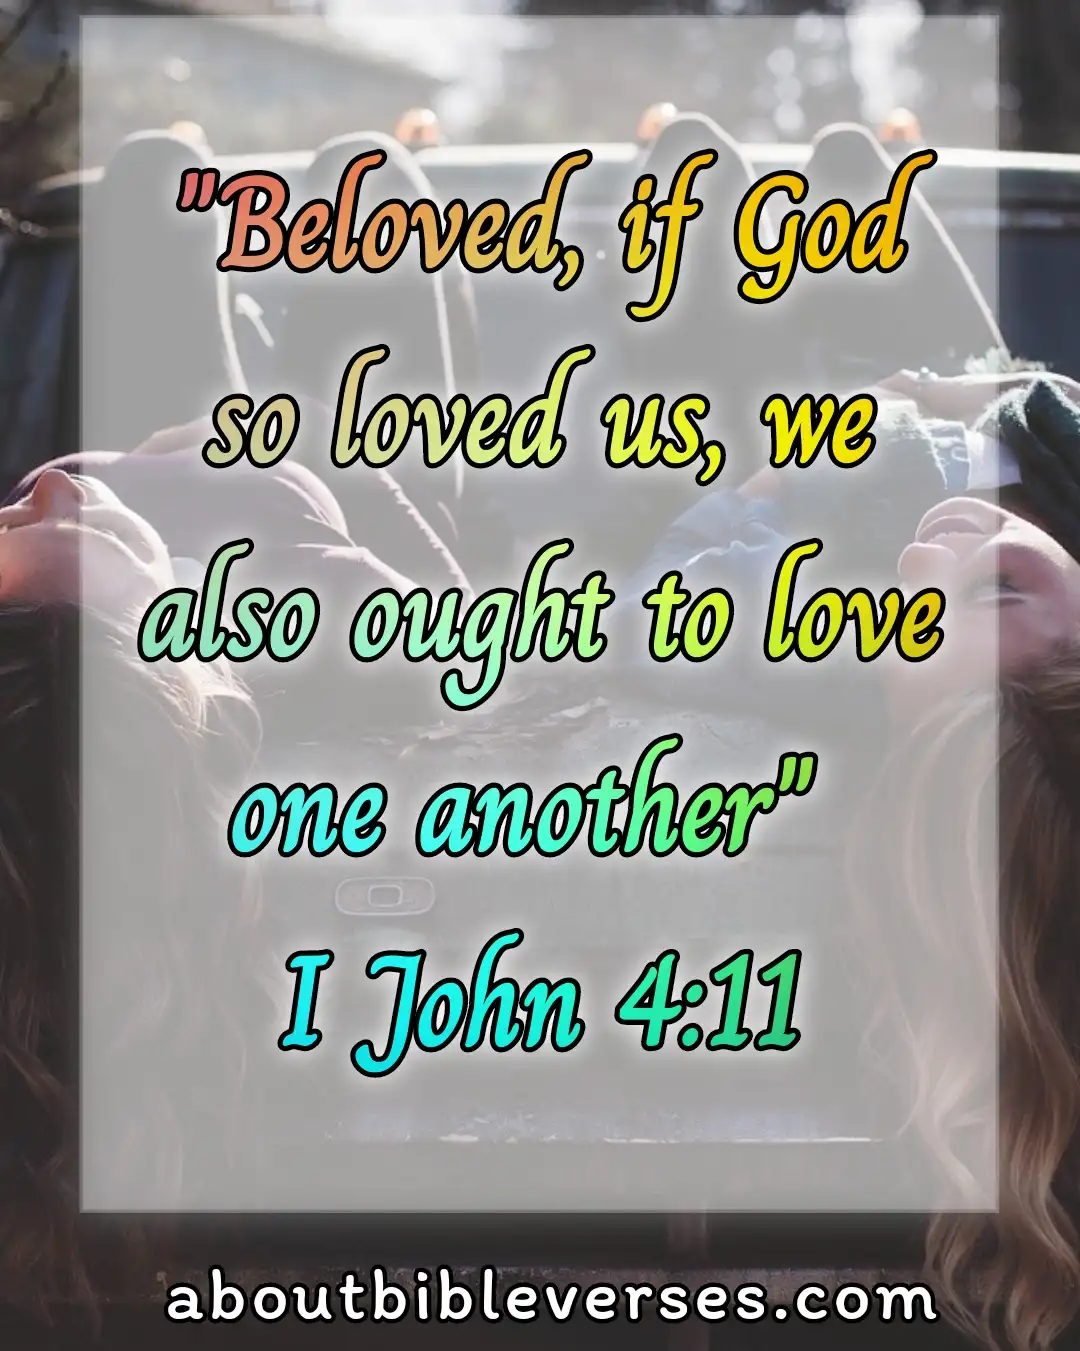 today bible verse (1 John 4:11)